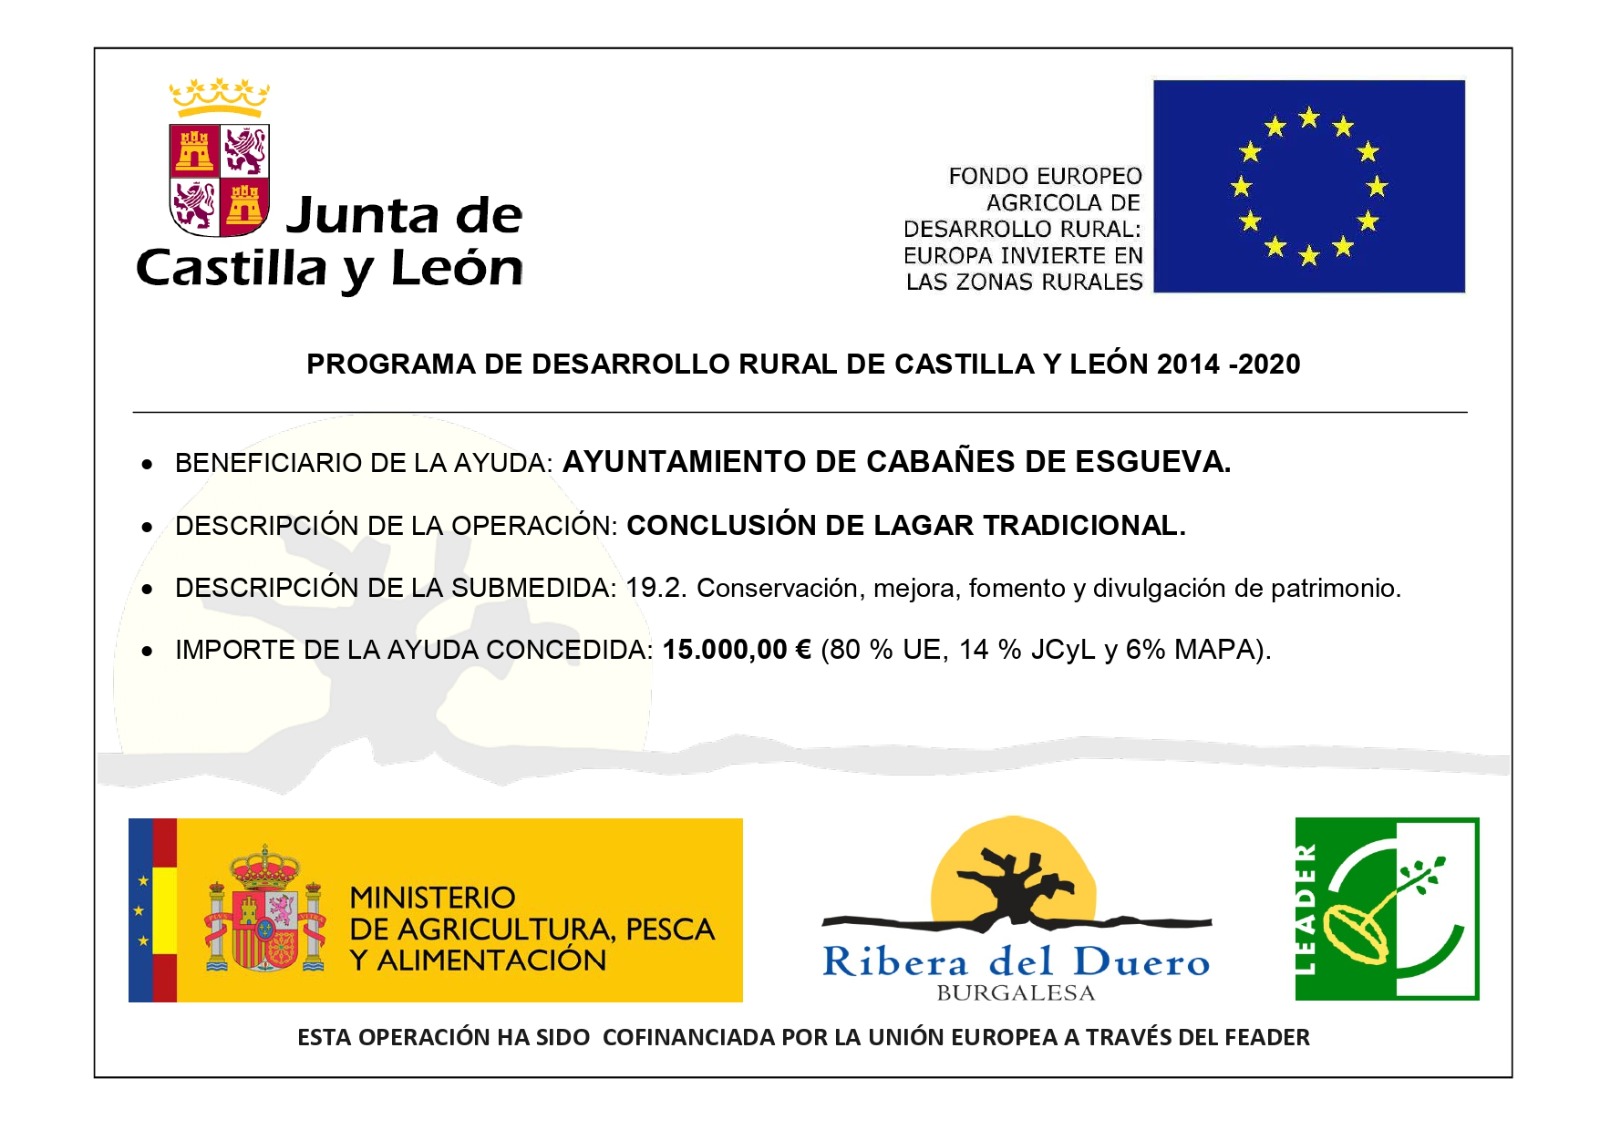 Ayuda LEADER 2014-2020. A.D.R.I. Ribera del Duero Burgalesa: Proyecto conclusión lagar tradicional